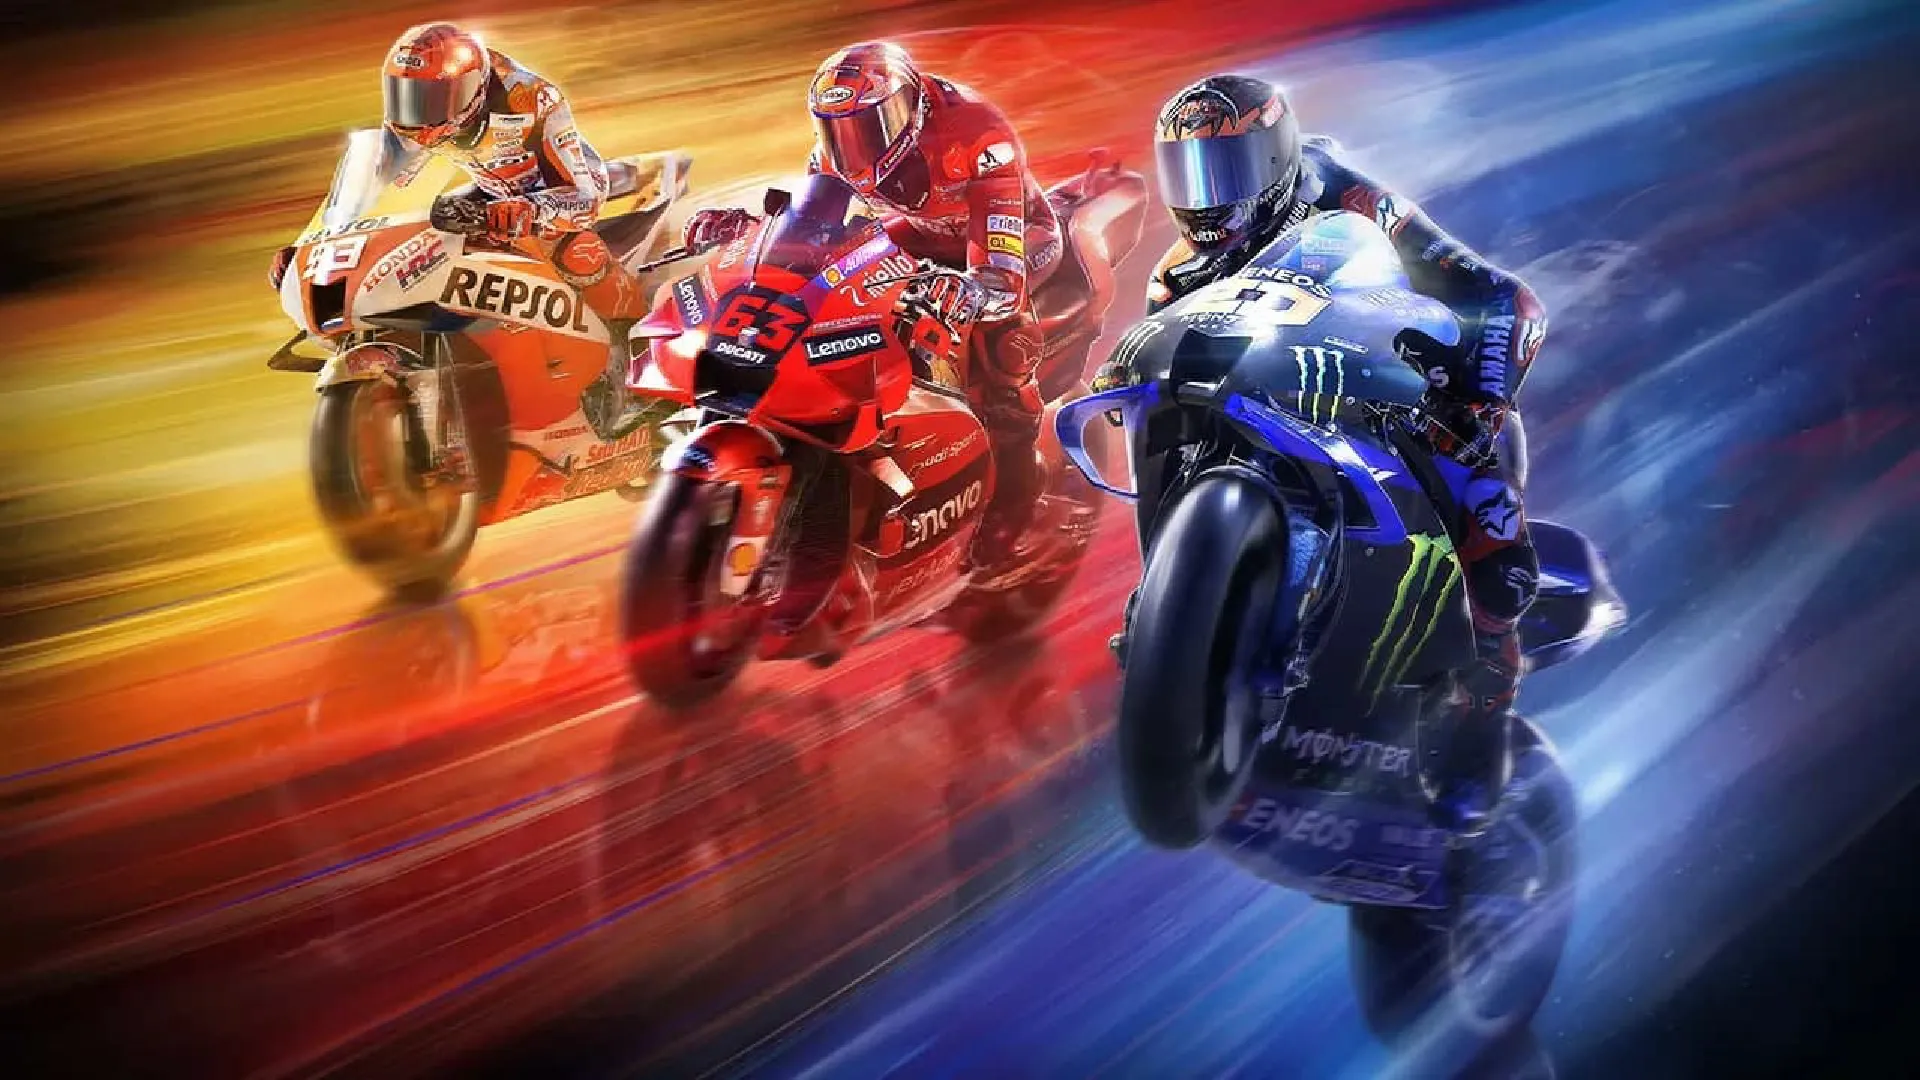 بازی MotoGP 22 برای PS5